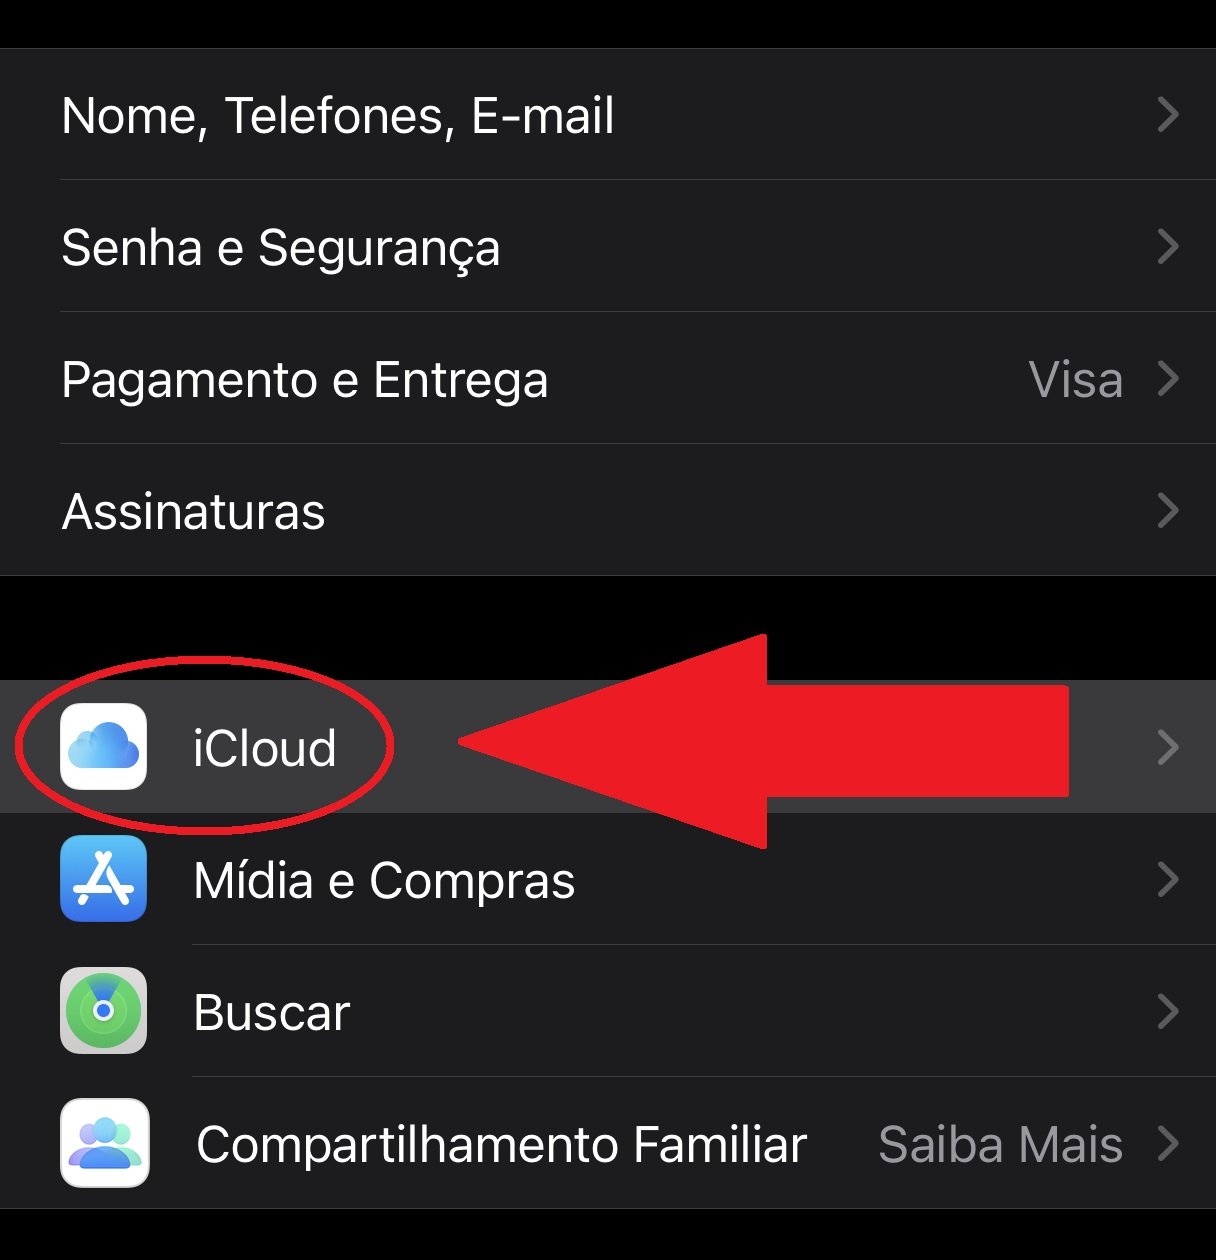 Aperte em iCloud para ver as informações sobre backups